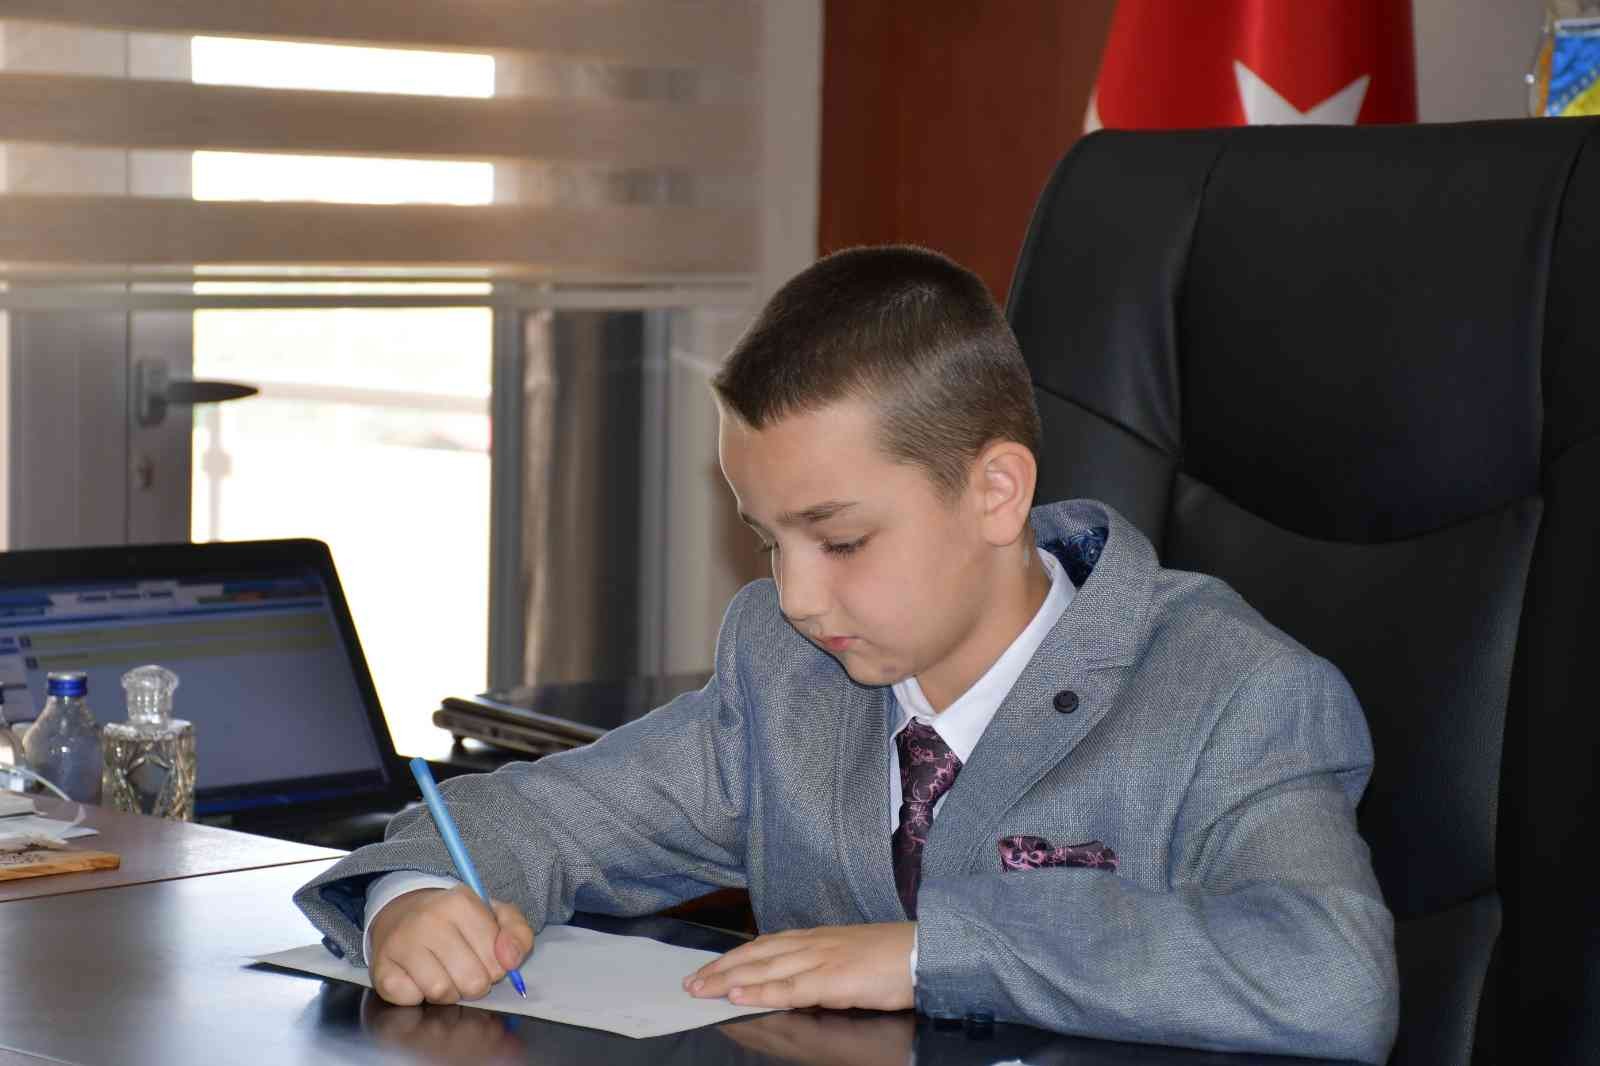 23 Nisan Ulusal Egemenlik ve Çocuk Bayramı dolayısıyla İznik Belediyesi’nde minikler başkanlık koltuğuna oturdu. Ülke genelinde gerçekleşen ...